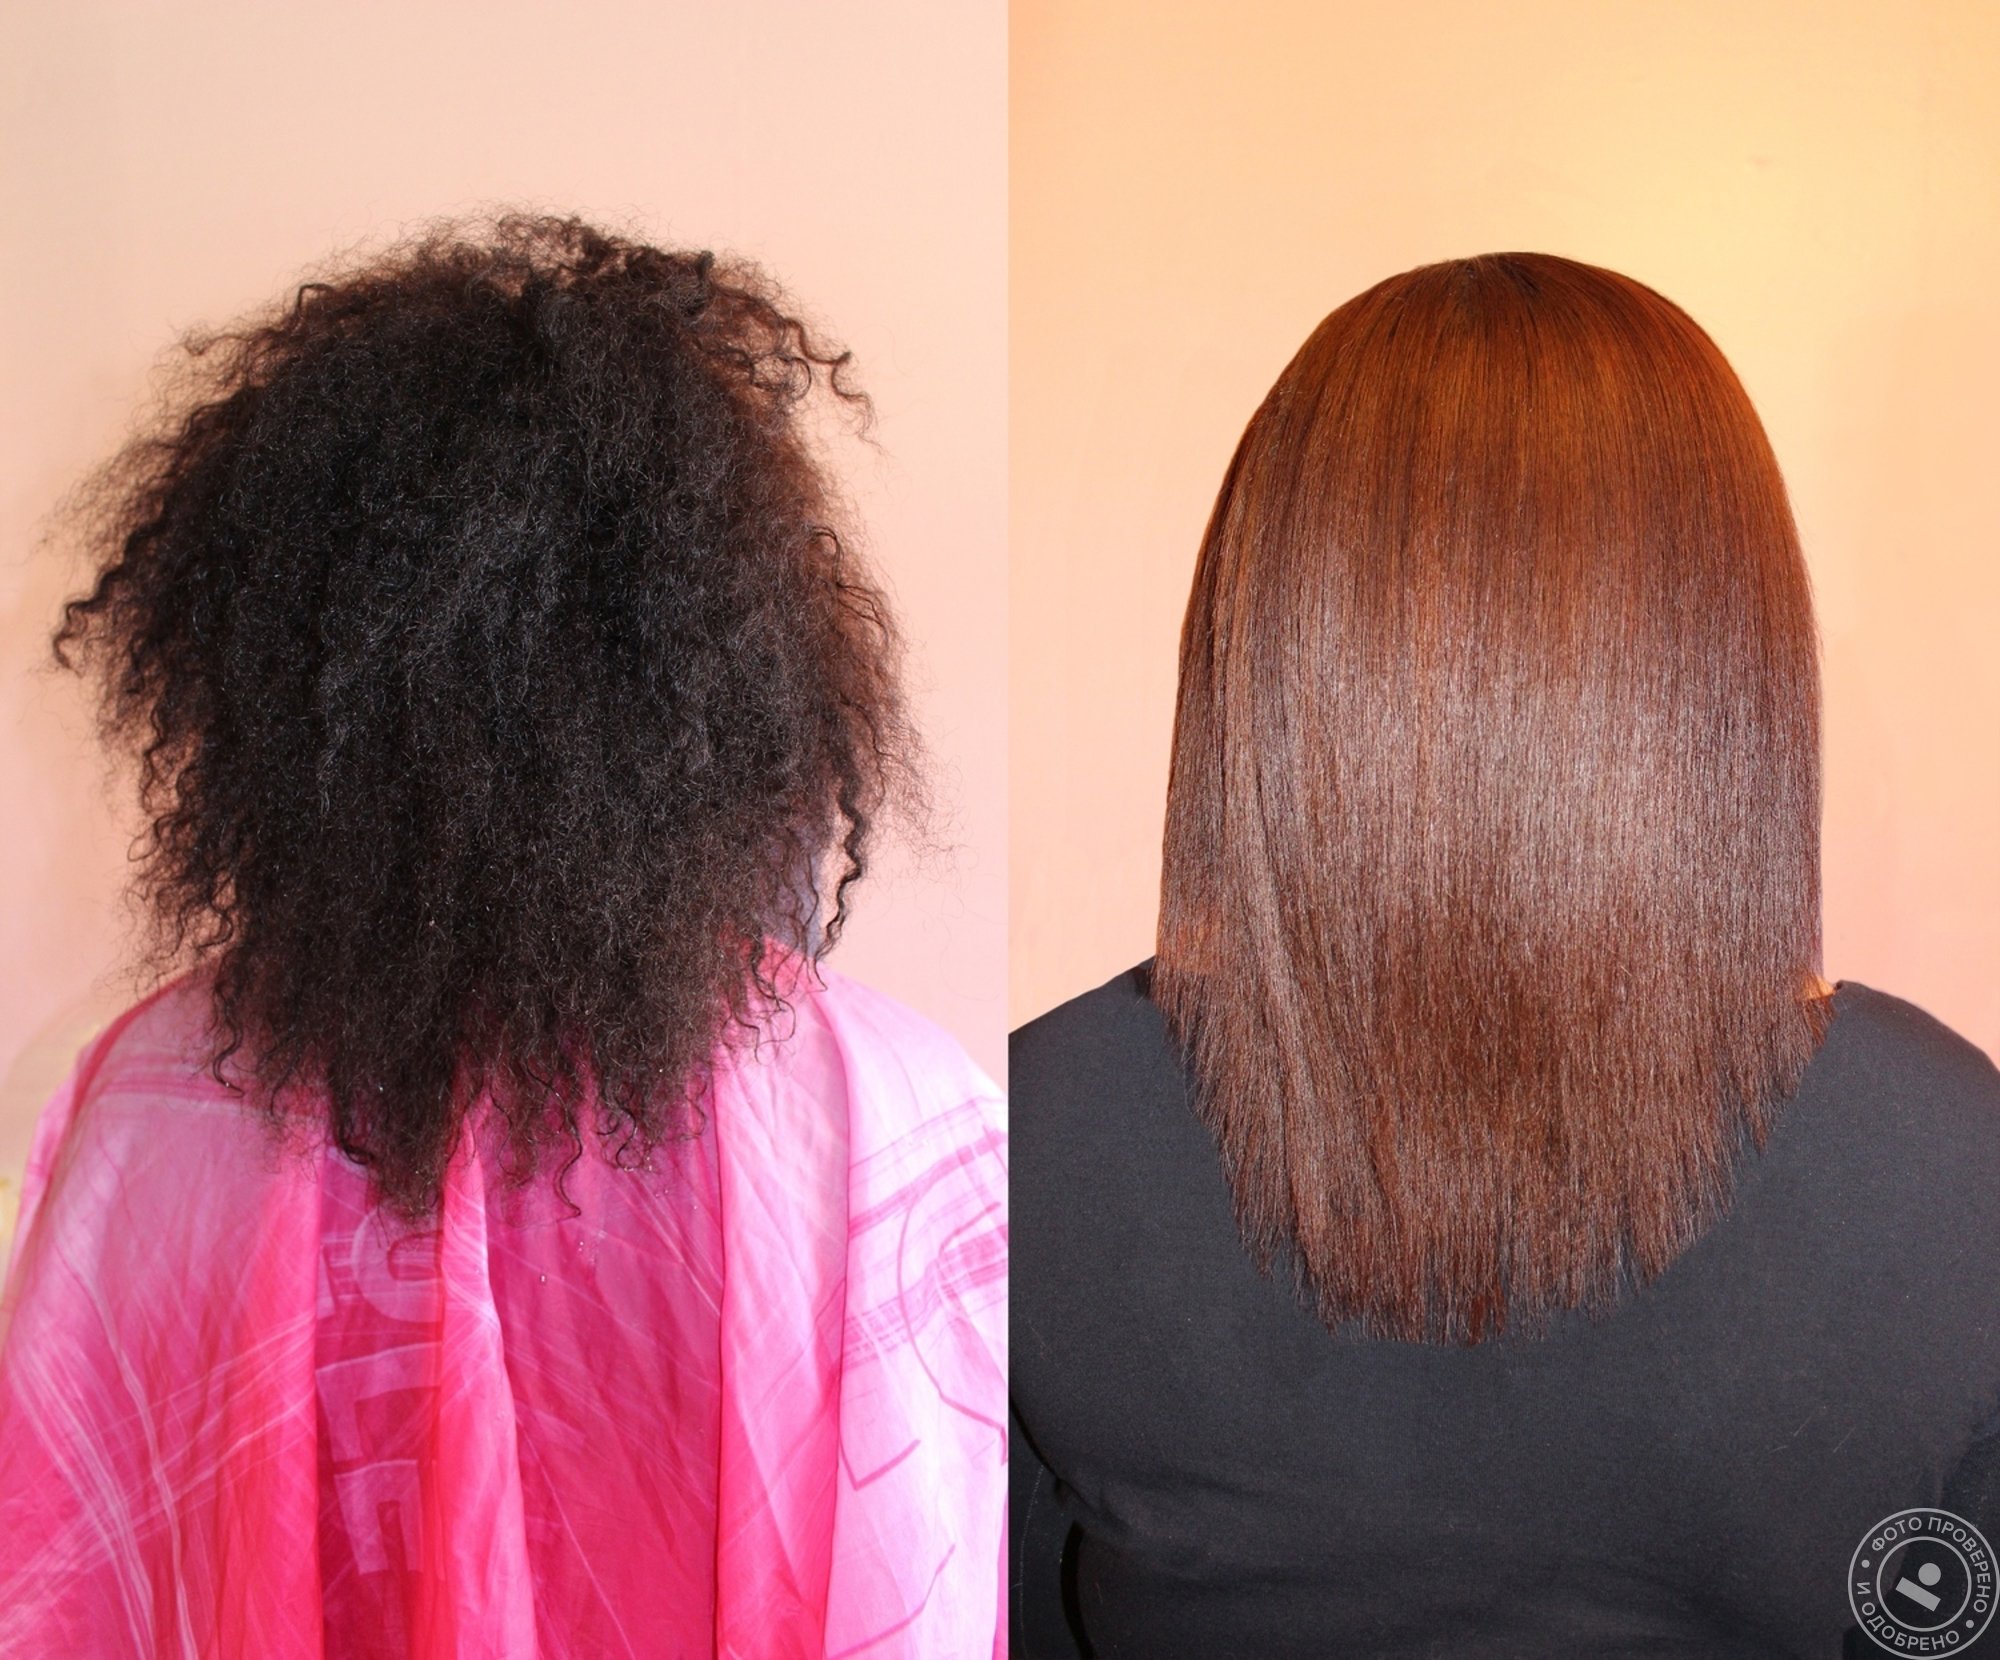 Волосы после кератинового выпрямления. Выпрямление волос до и после. Кератиновое выпрямление на густые волосы. Кератиновое выпрямление волос средней длины. После кератинового выпрямления использовать